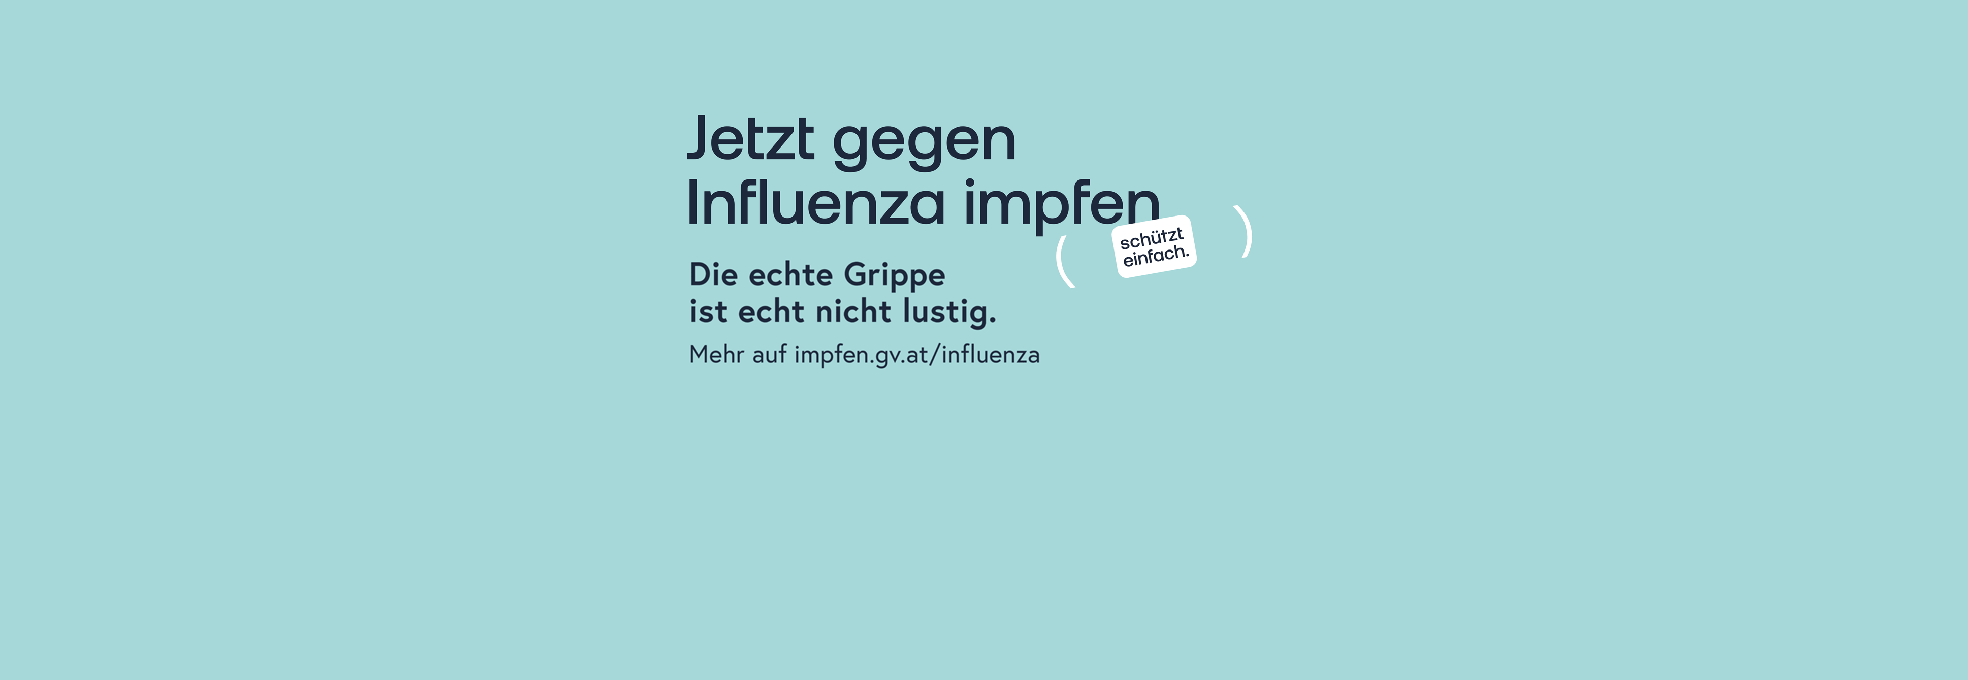 Jetzt gegen Influenza impfen schützt einfach. Die echte Grippe ist echt nicht lustig. Mehr auf impfen.gv.at/influenza